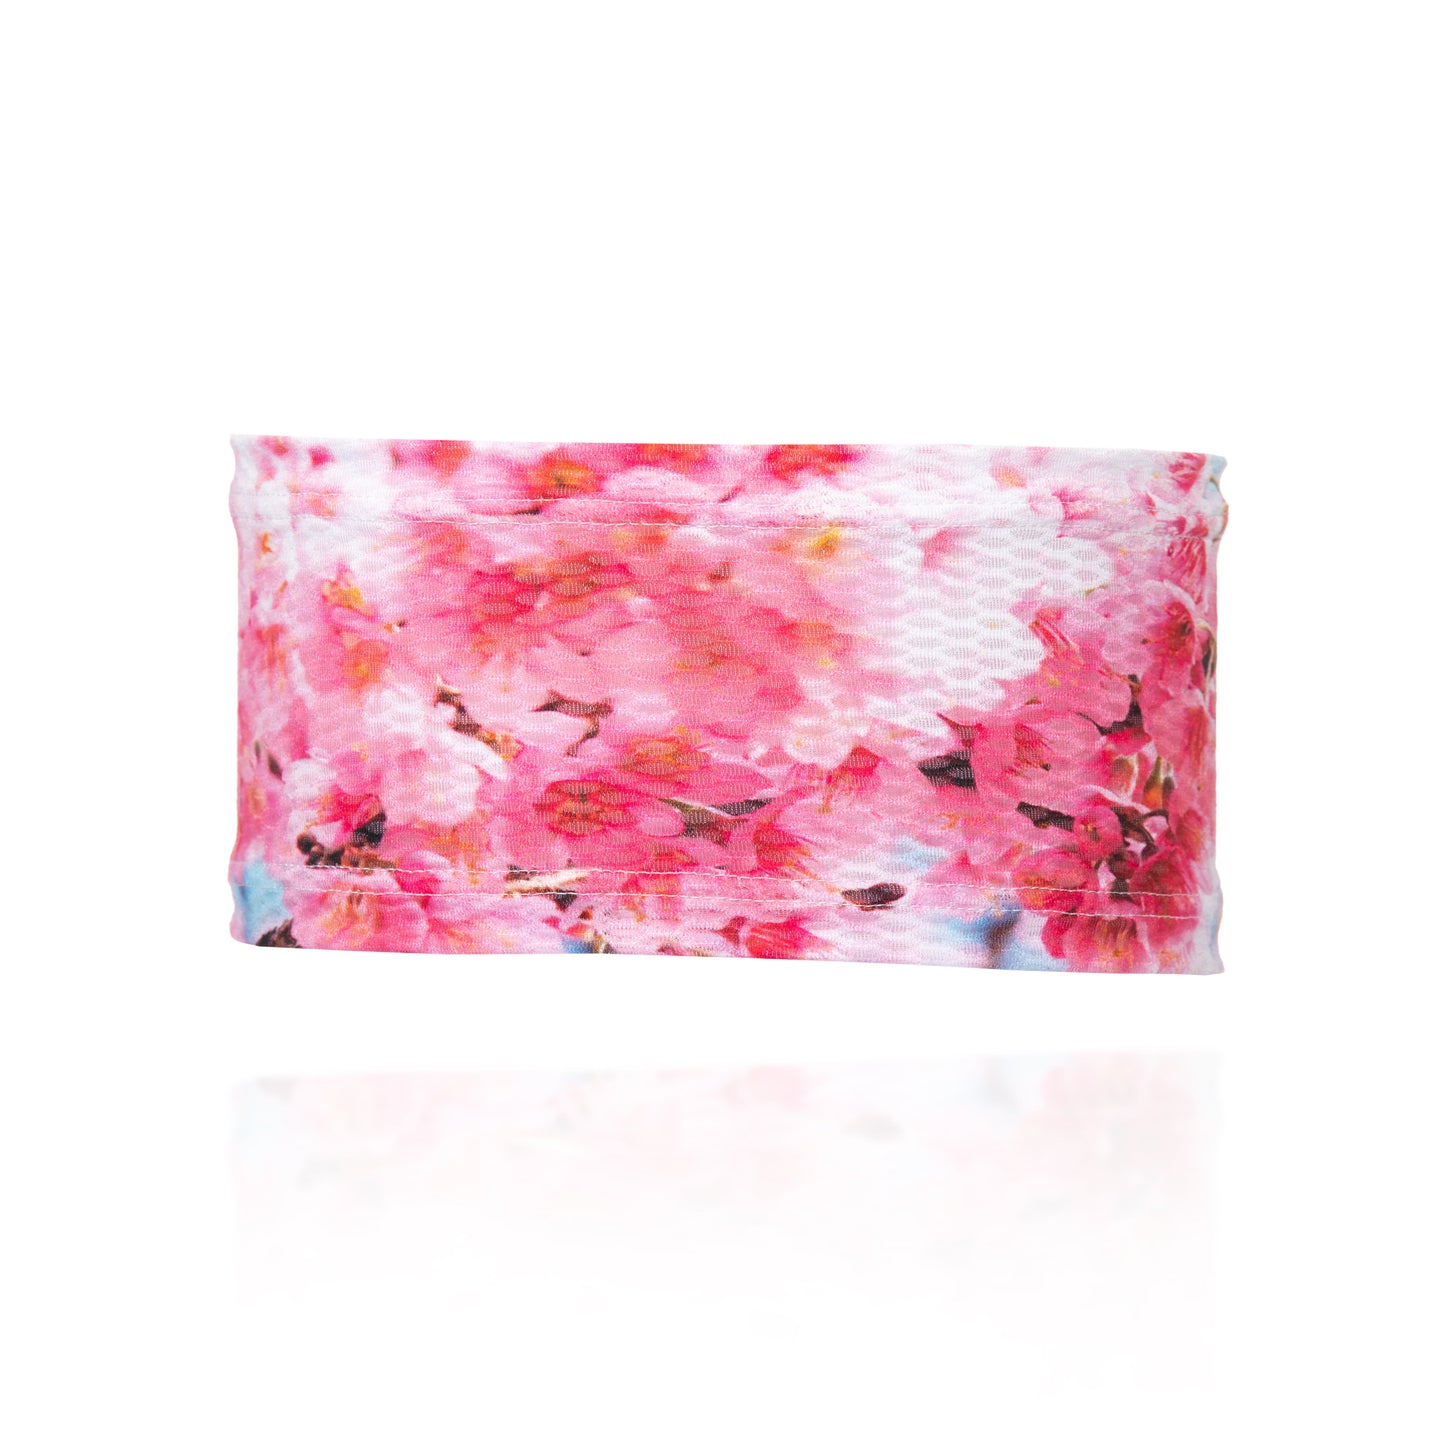 Ultra Light Headband Almond Blossom